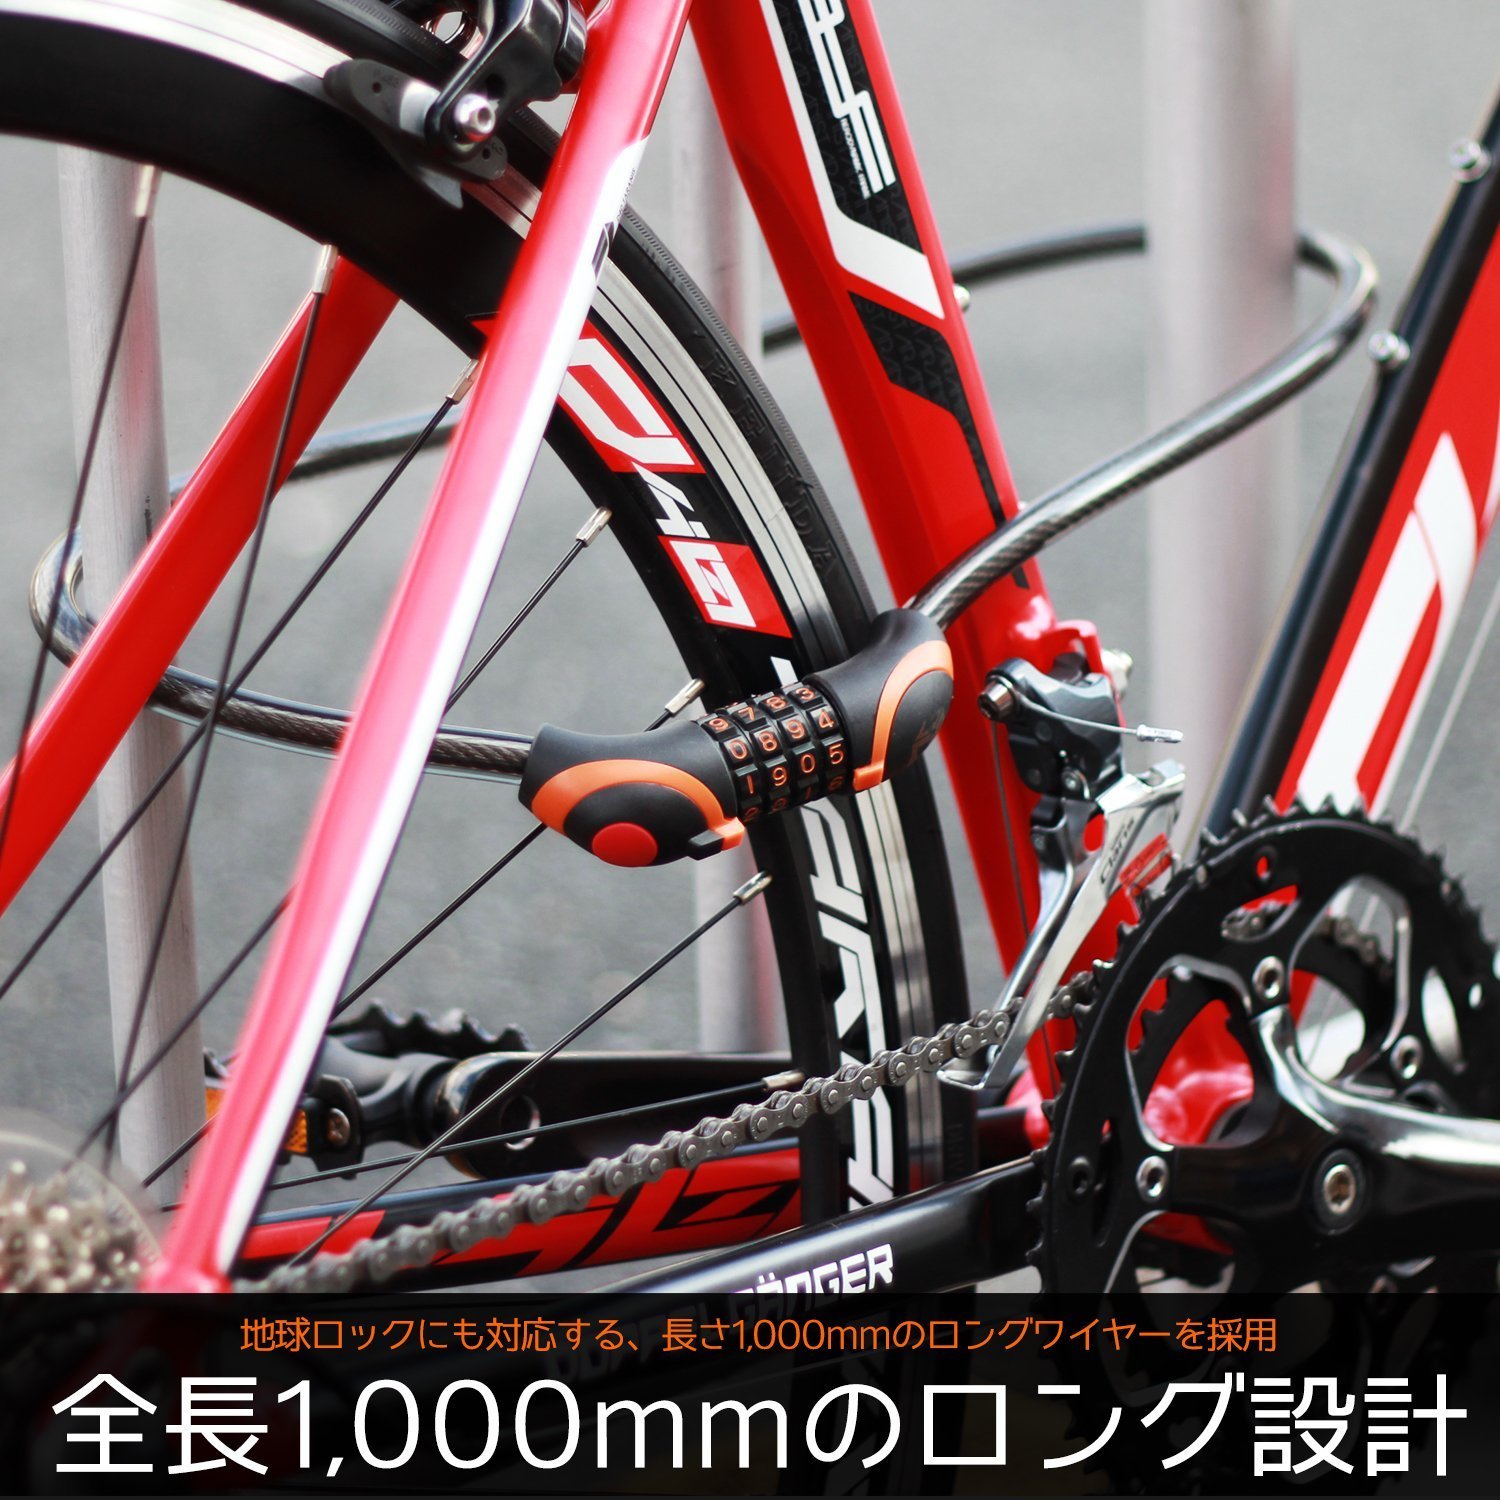 1104円 Seasonal Wrap入荷 TNK工業 スピードピット SN-180 GREEN SNAKE ロック 31055